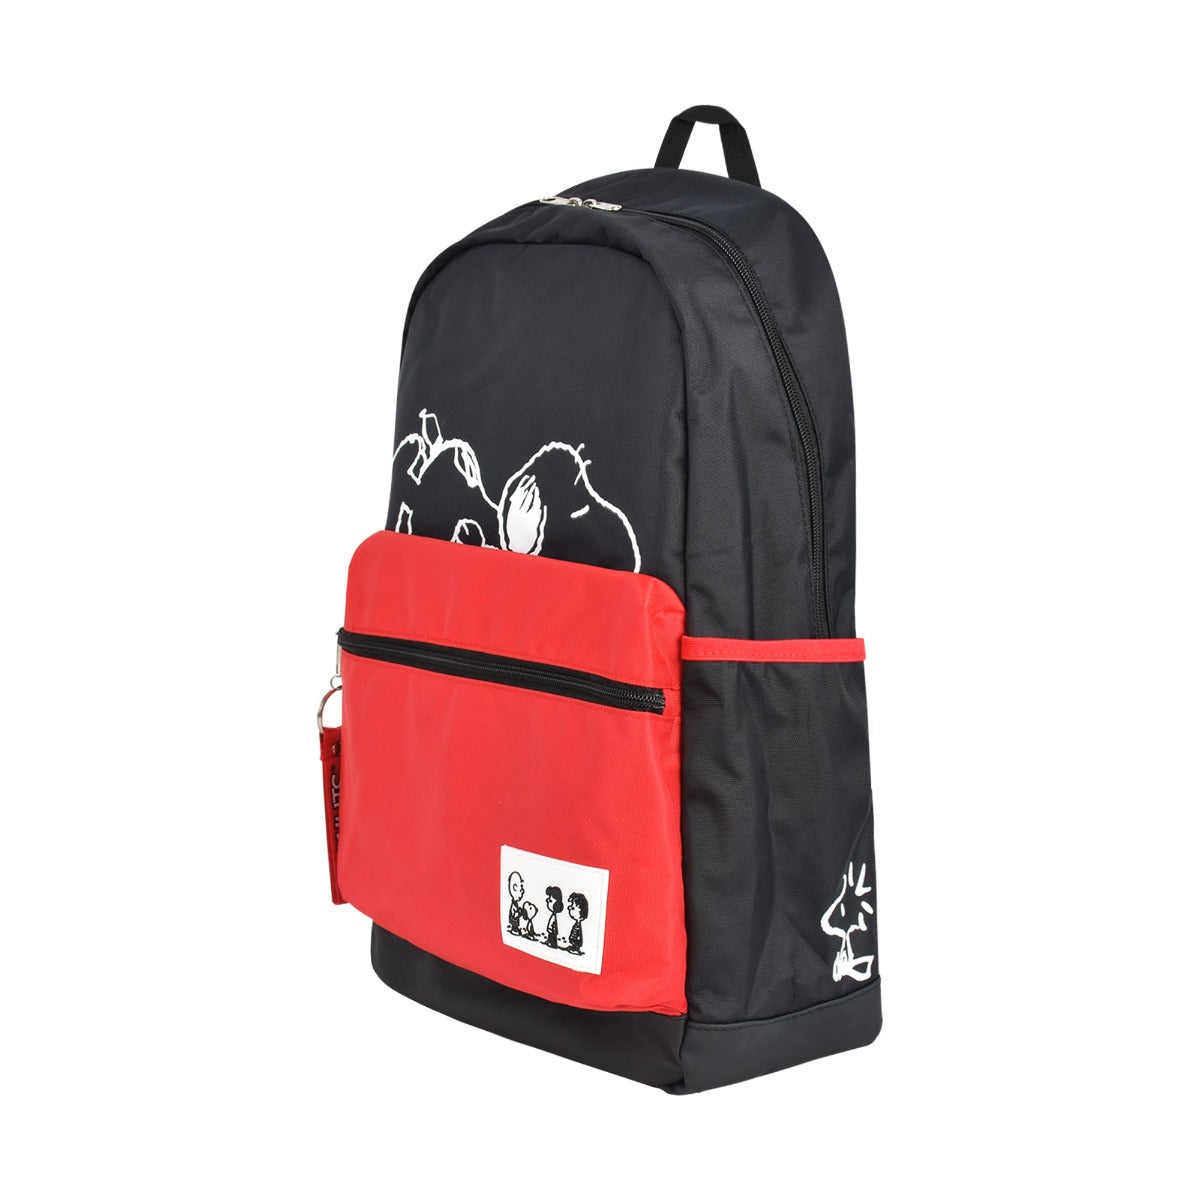 Black red Ful Peanuts Snoopy Charlie Brown Woodstock backpack - dependable school backpacks